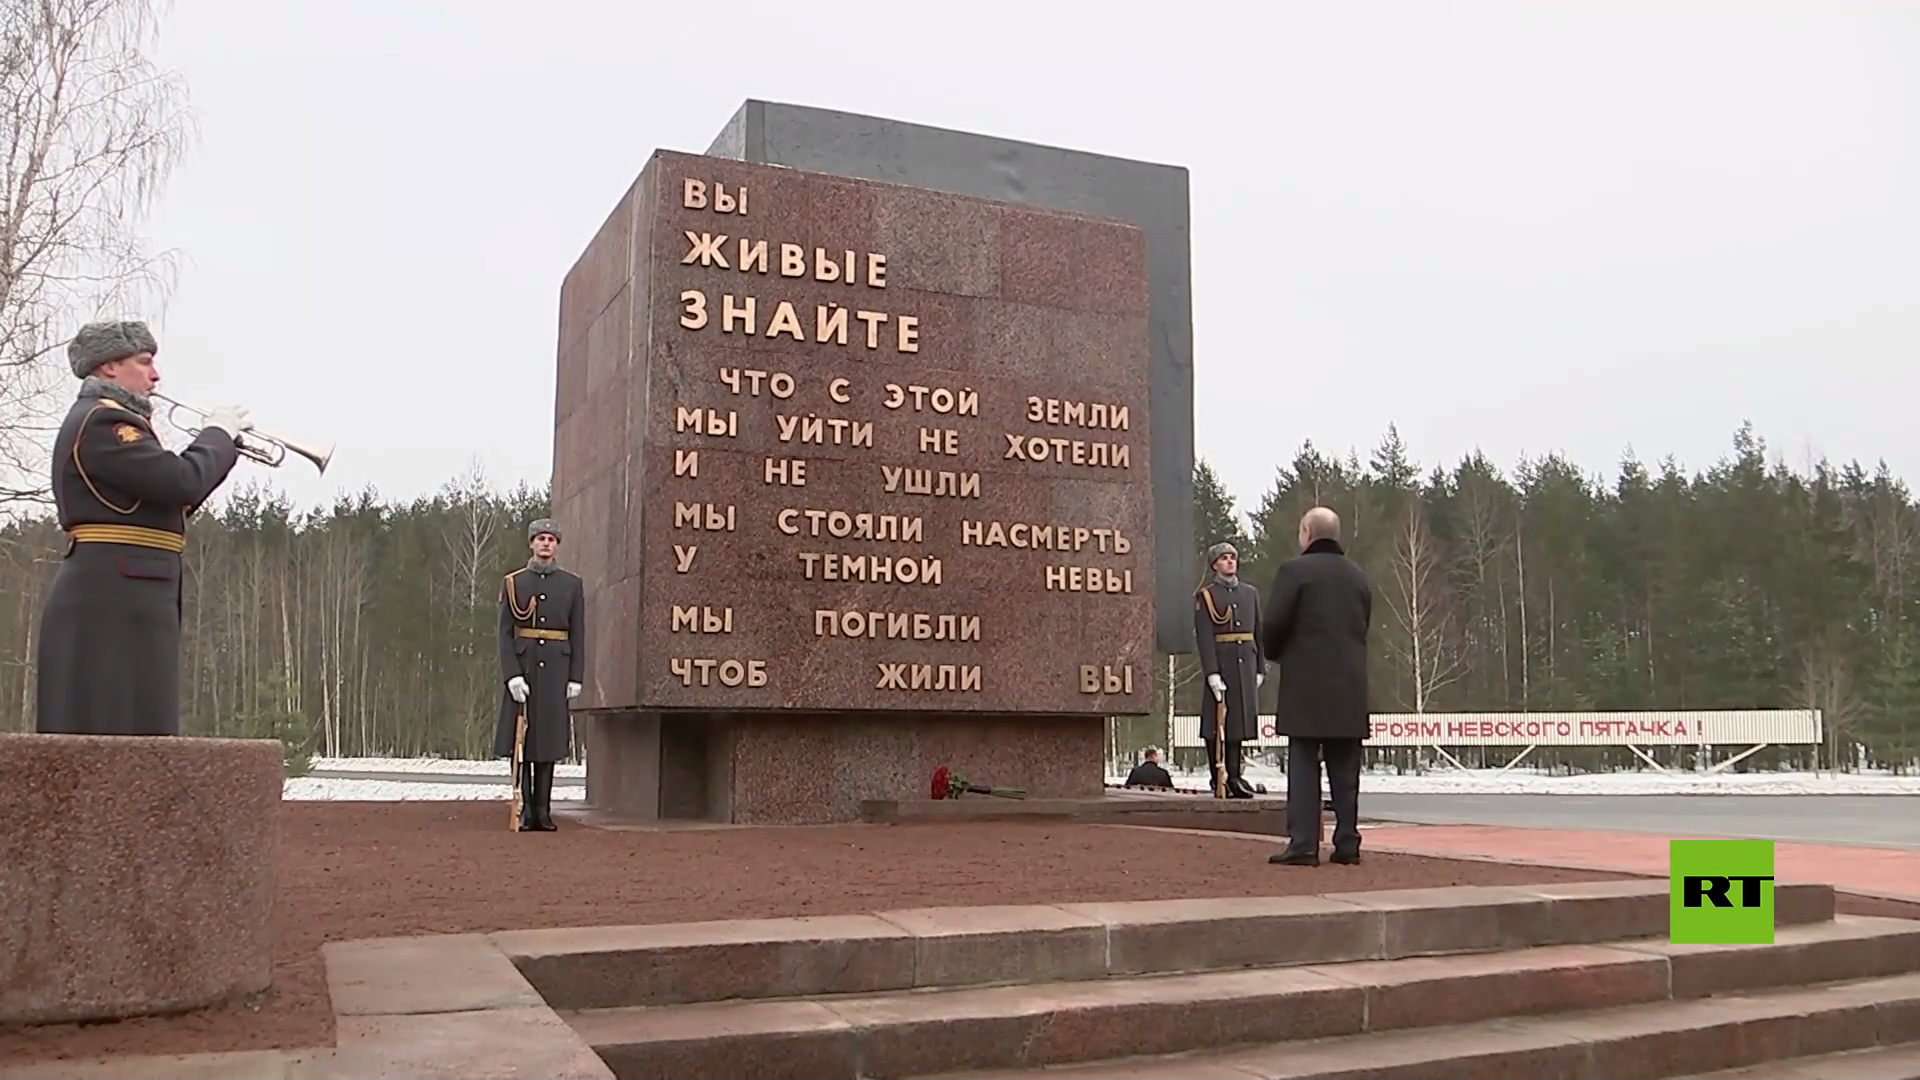 بالفيديو.. بوتين يضع الزهور على النصب التذكاري في نيفسكي بياتاتشوك في ذكرى فك الحصار عن لينينغراد